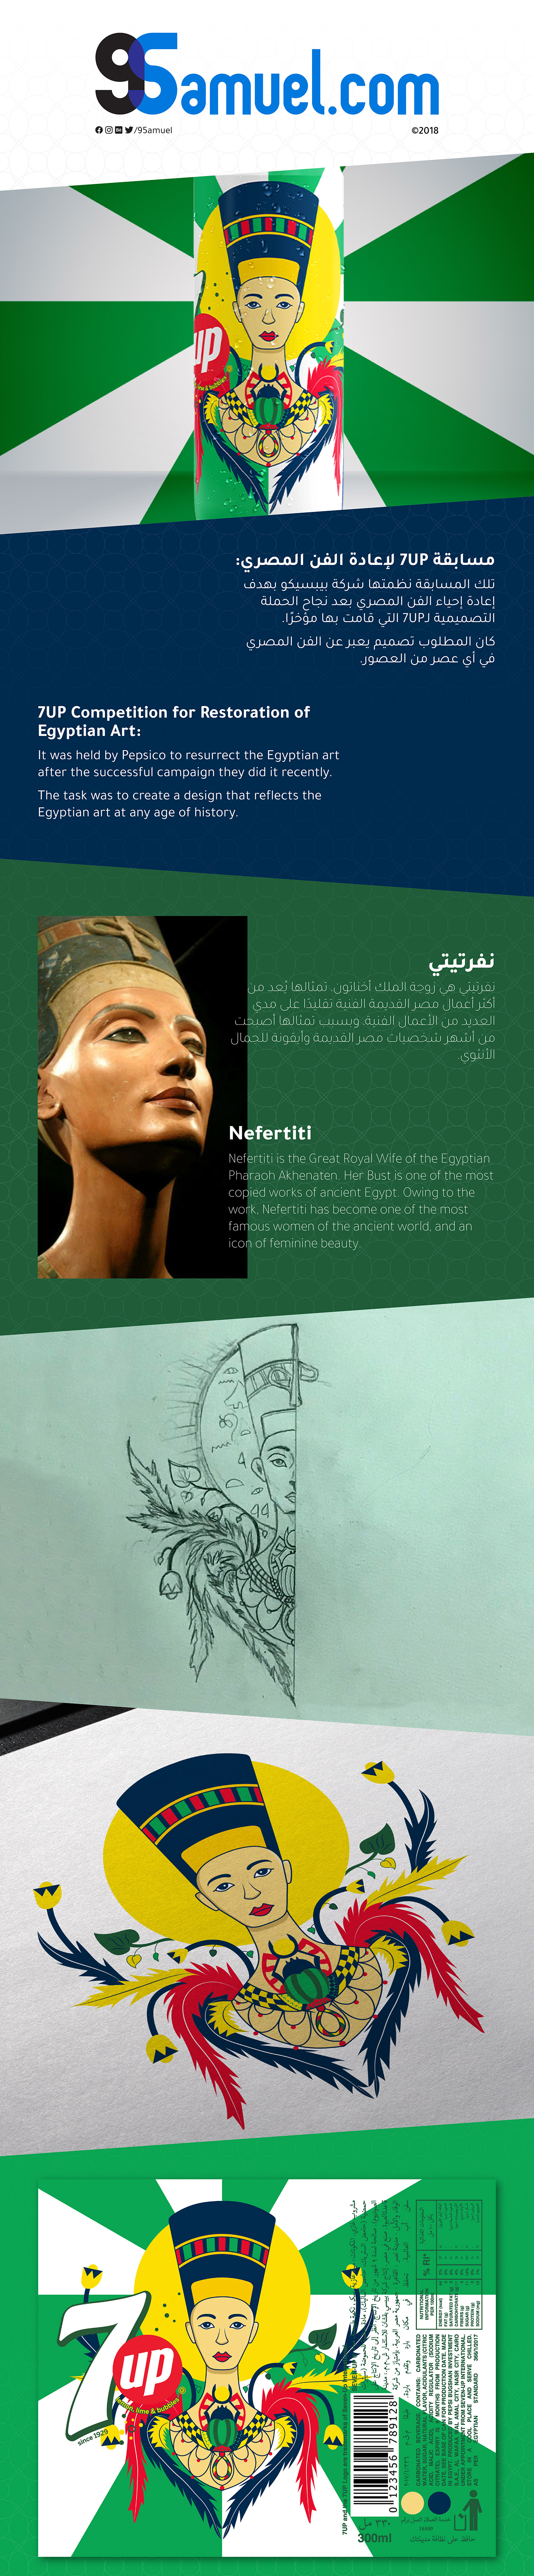 7Up pepsi can egypt egyptian cairo design art ILLUSTRATION  artwork